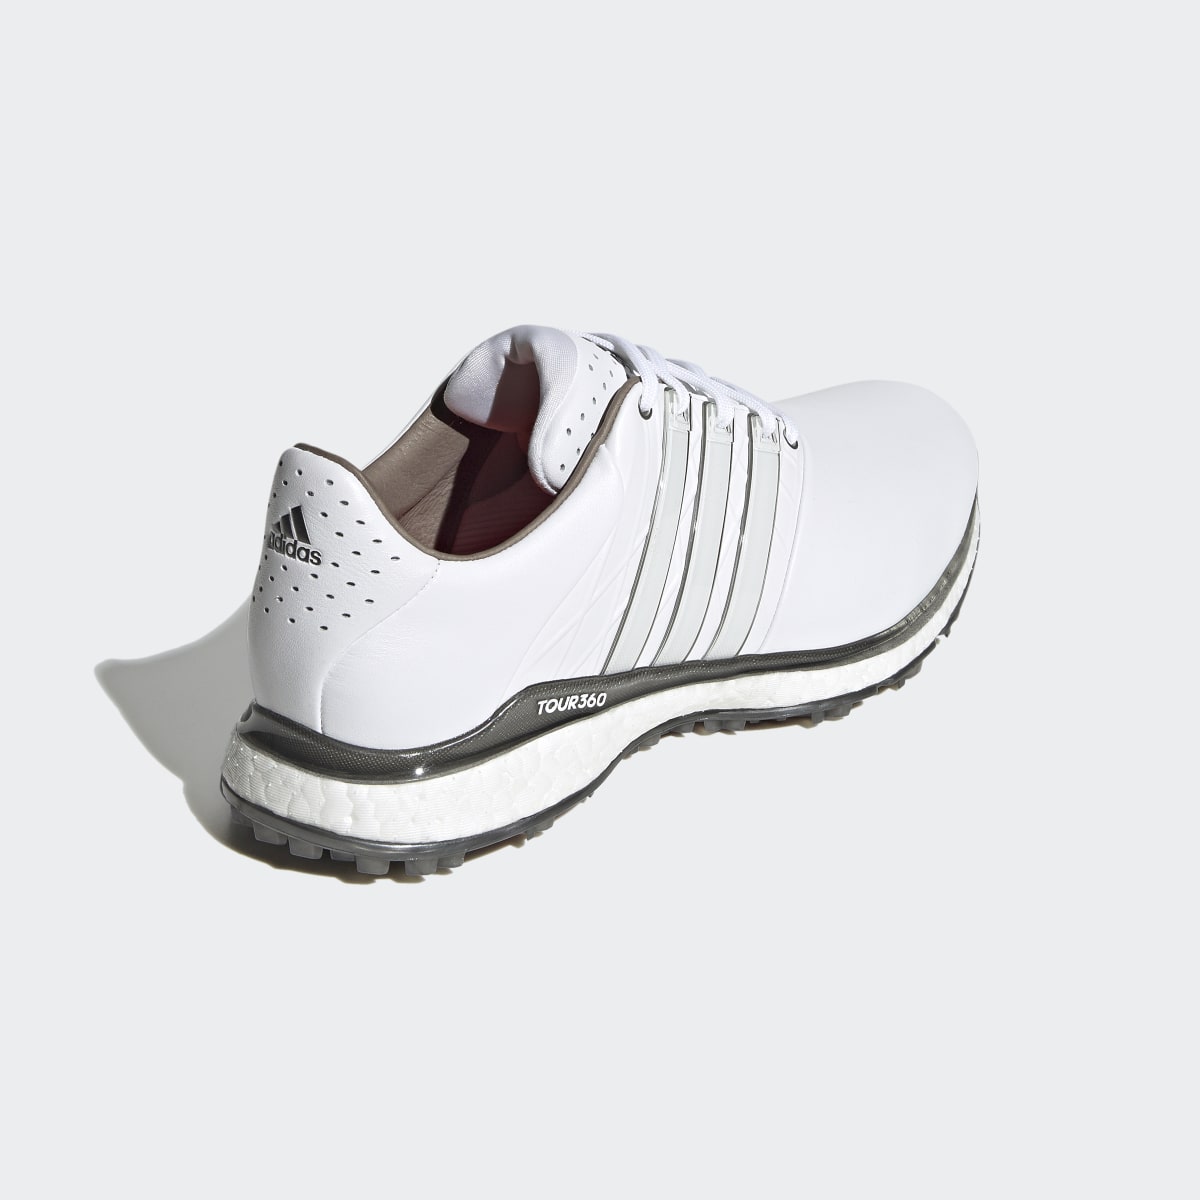 Adidas Sapatos de Golfe sem Bicos XT-SL 2.0 TOUR360. 7